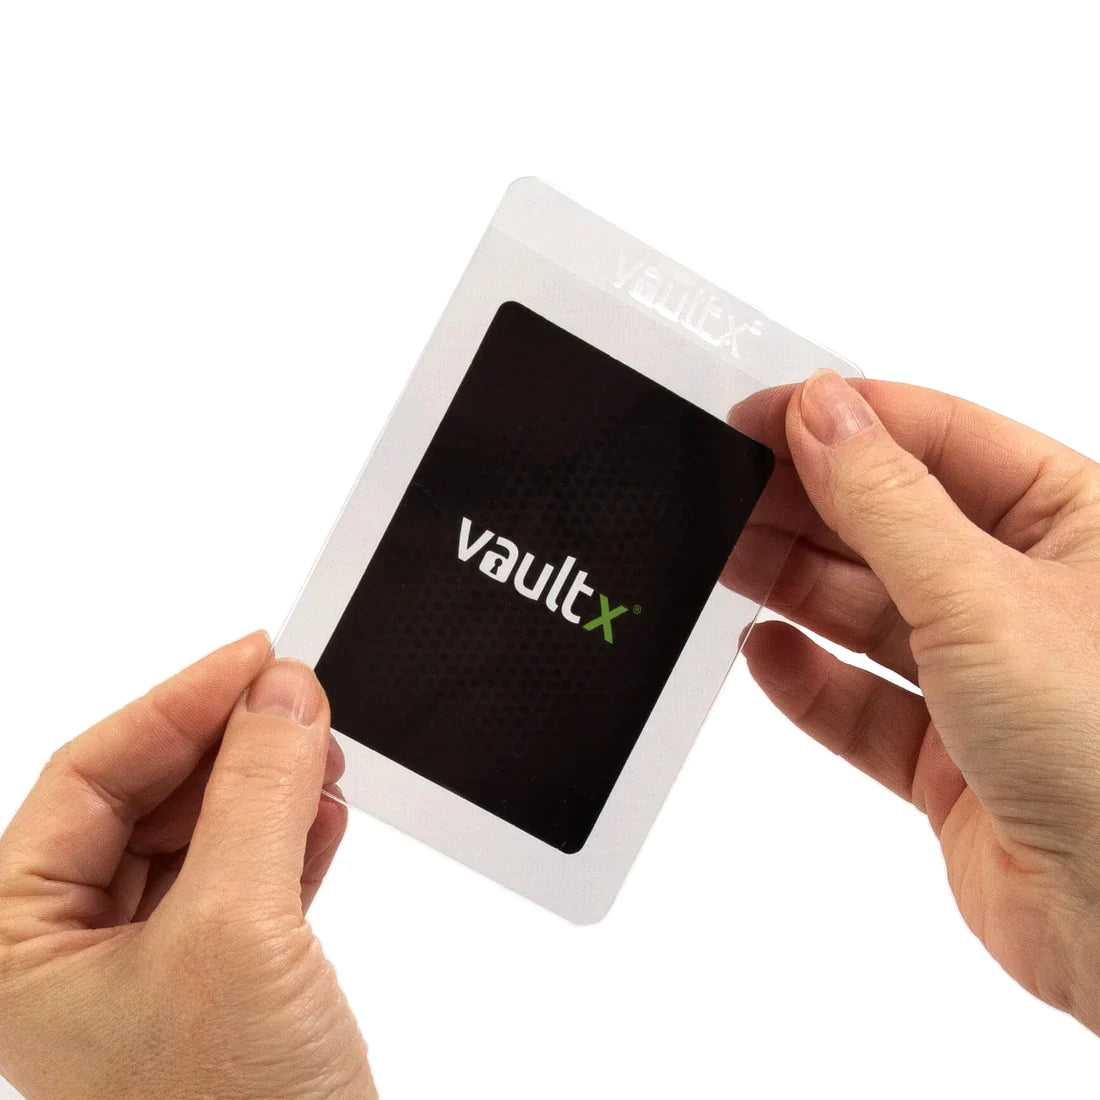 Vault X Semi-Rigid Card Holders (50pk) x 4